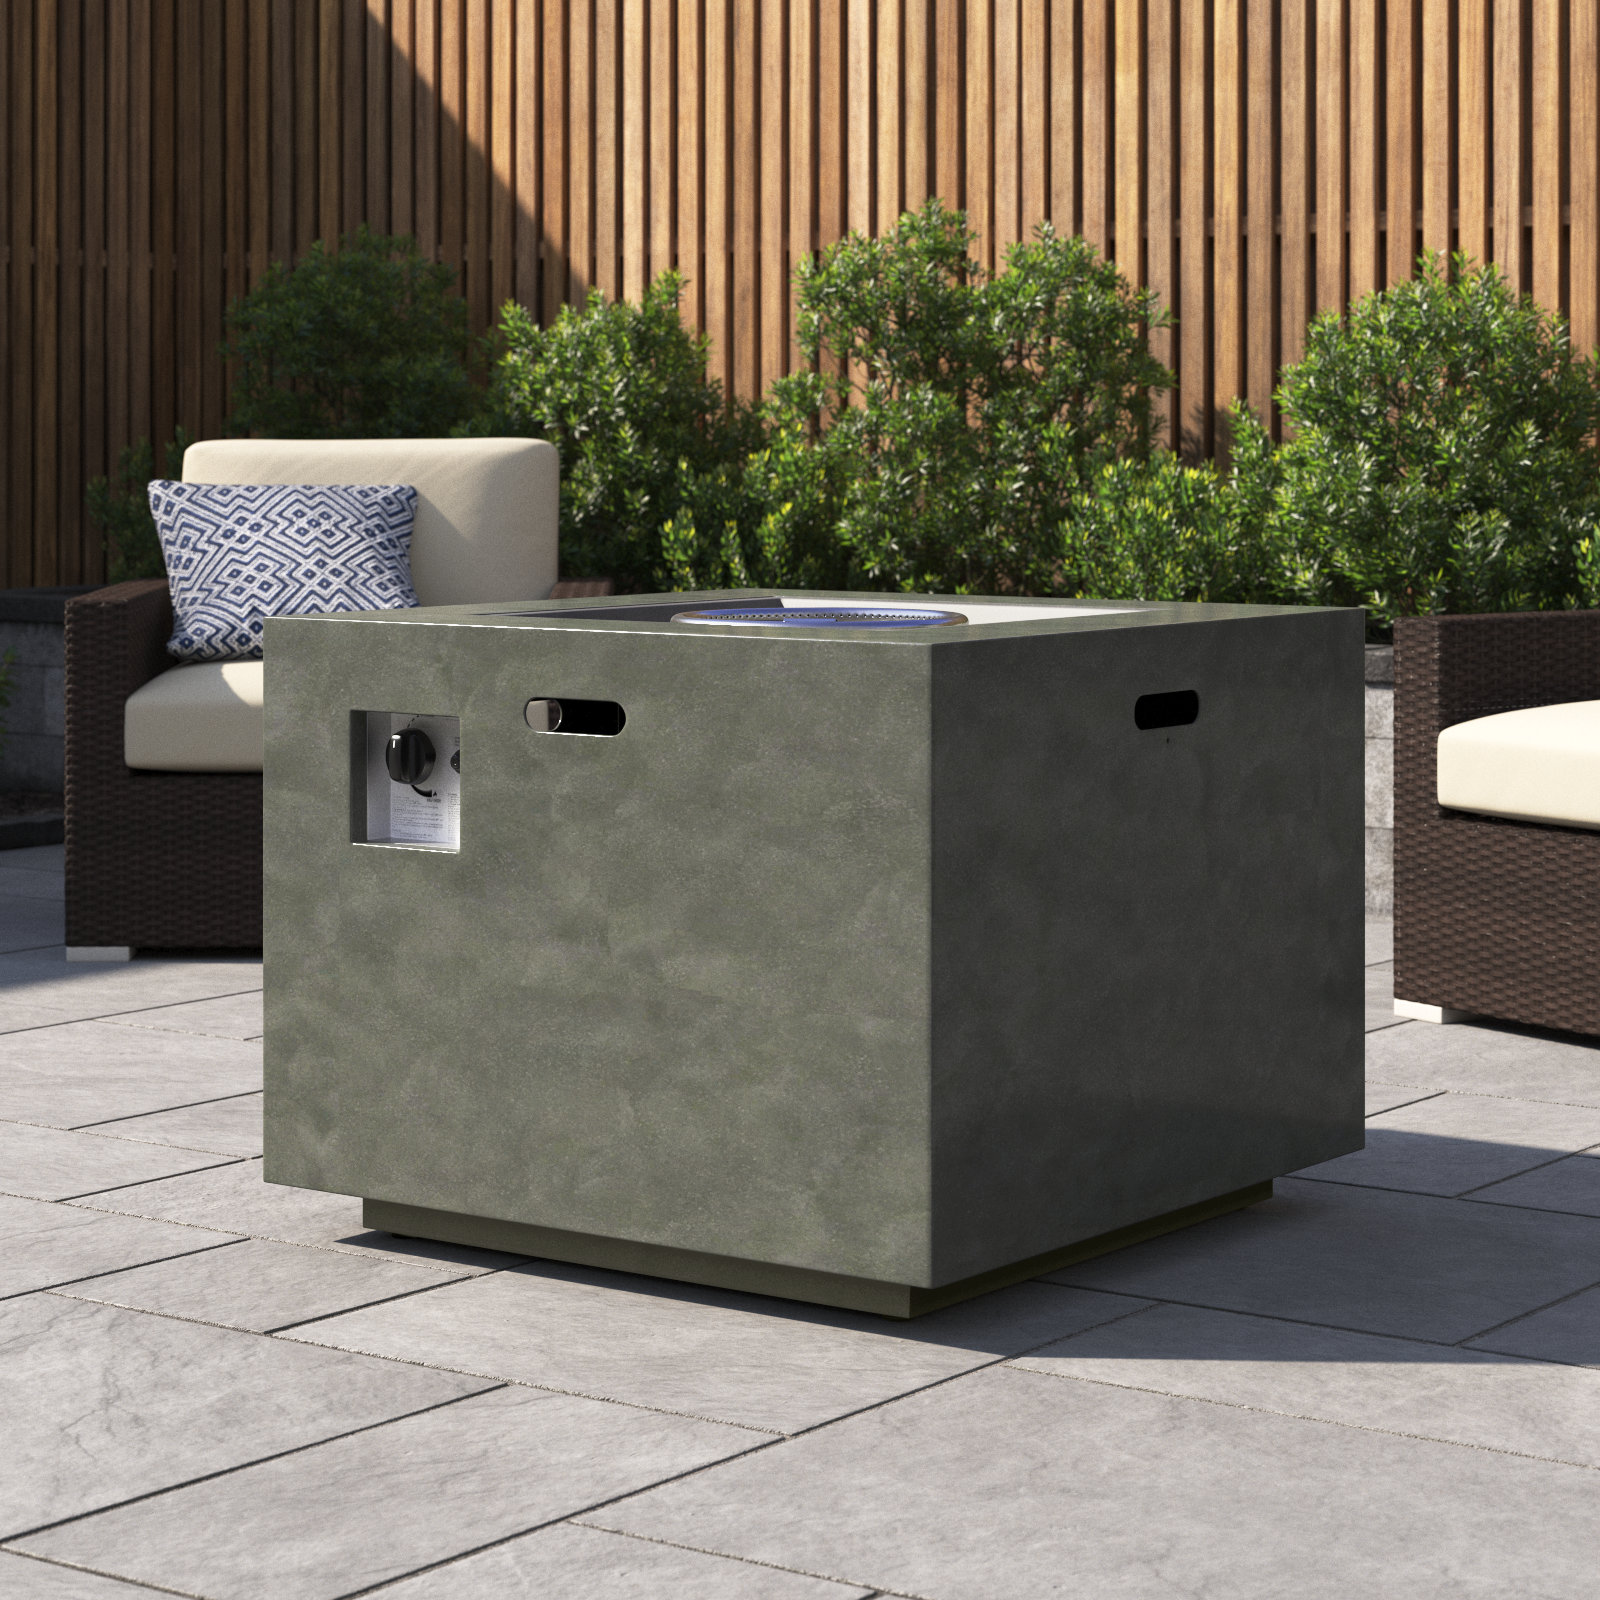 Wayfair Outdoor Concrete Propane | Pit Table Design® Alsacia Reviews Trent & Austin Fire